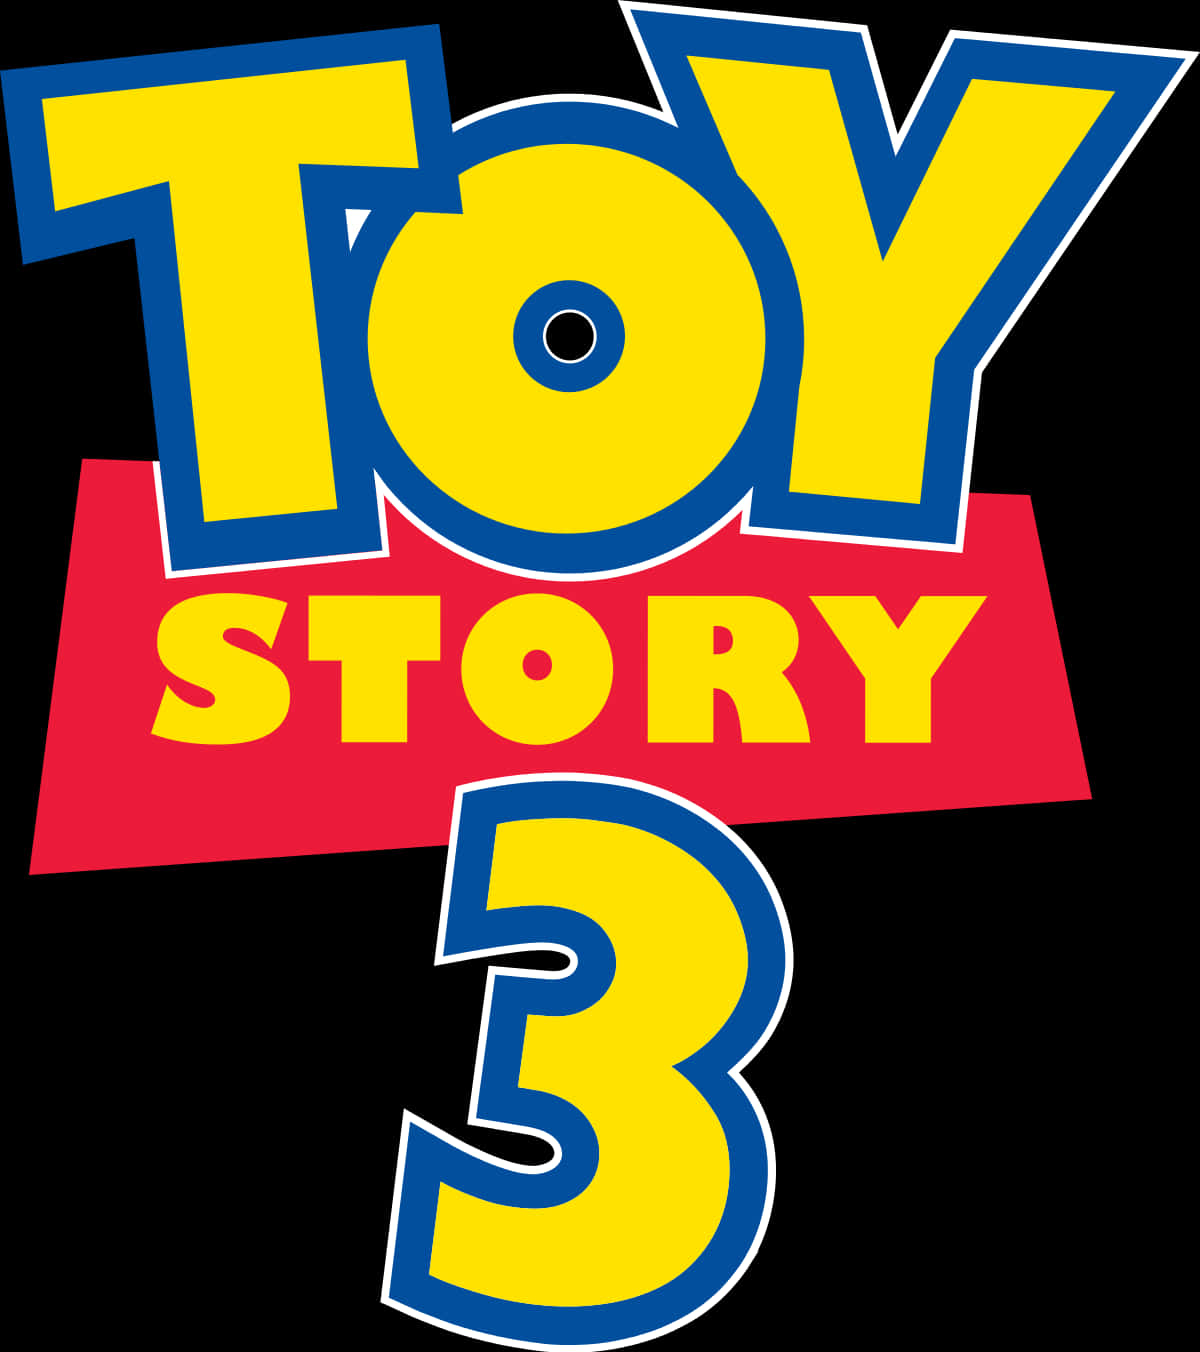 Toy Story 3 Logo